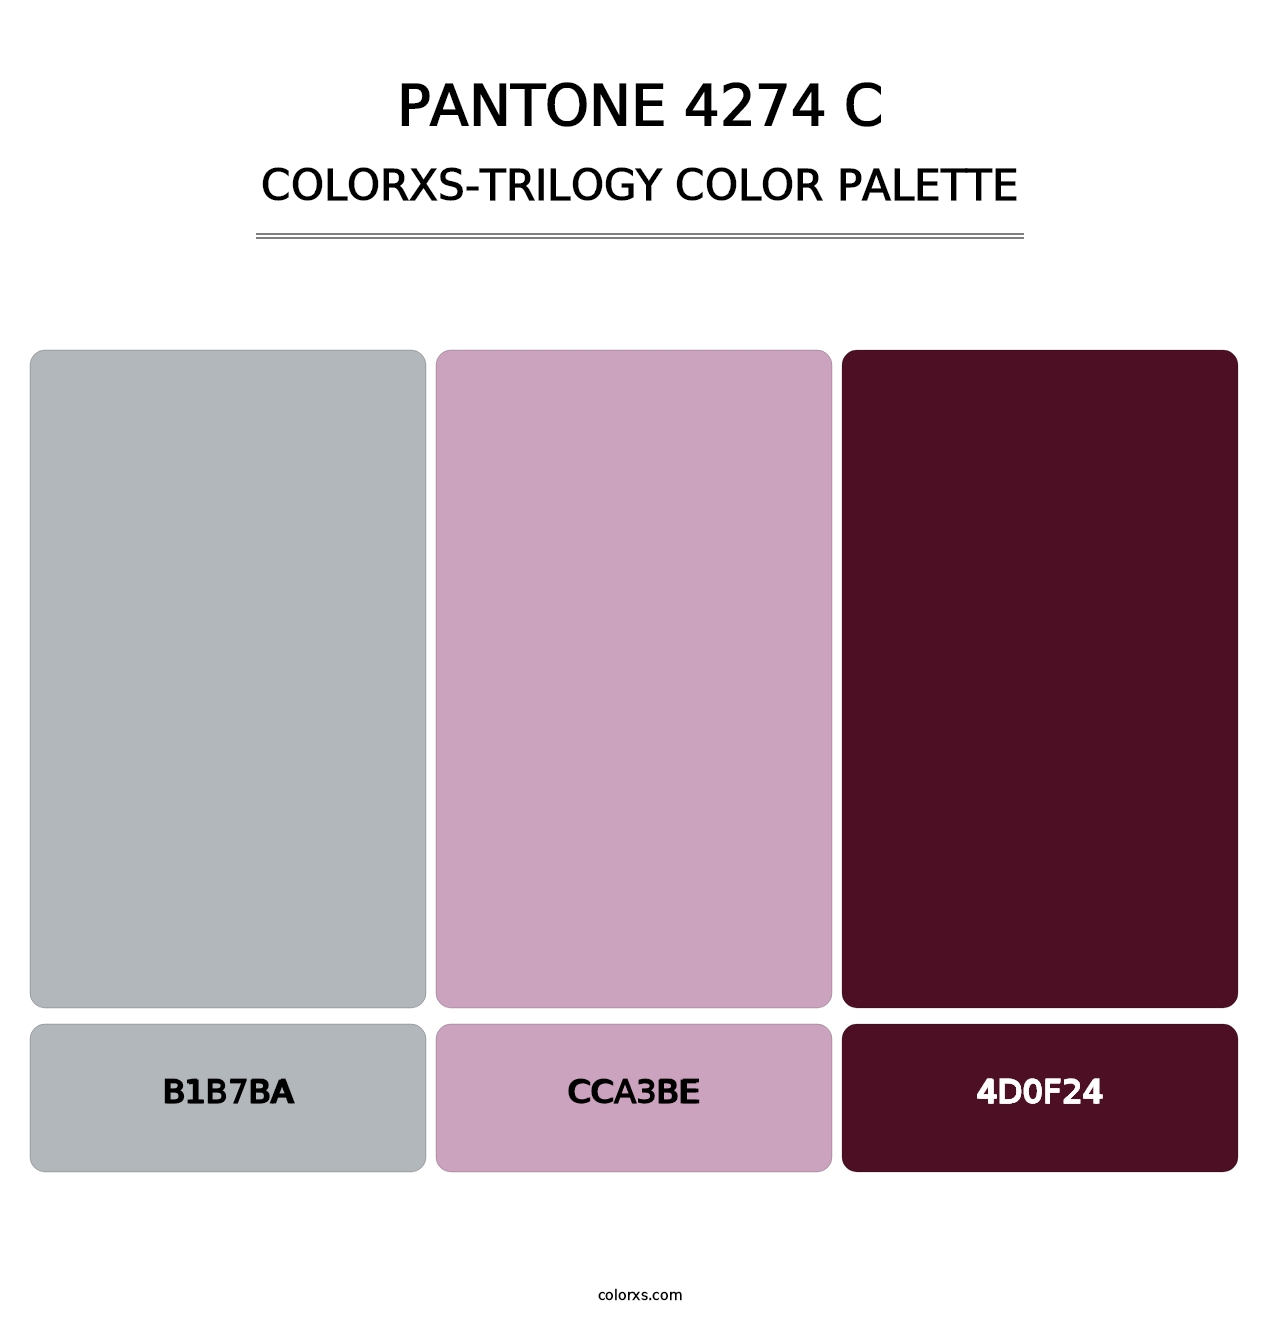 PANTONE 4274 C - Colorxs Trilogy Palette